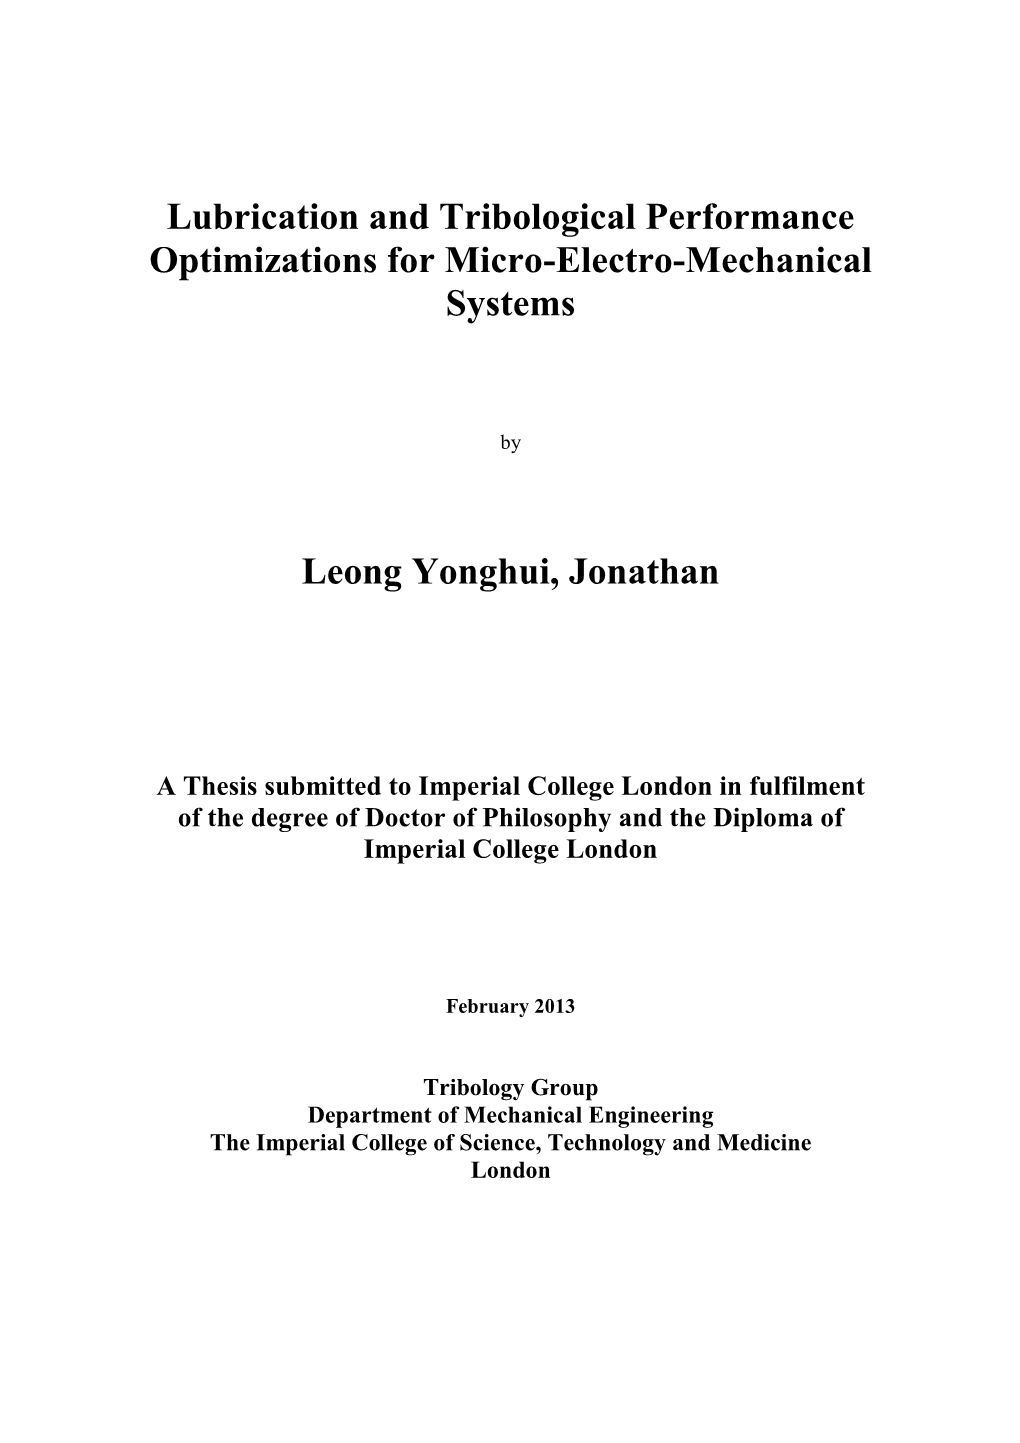 Leong Yonghui, Jonathan